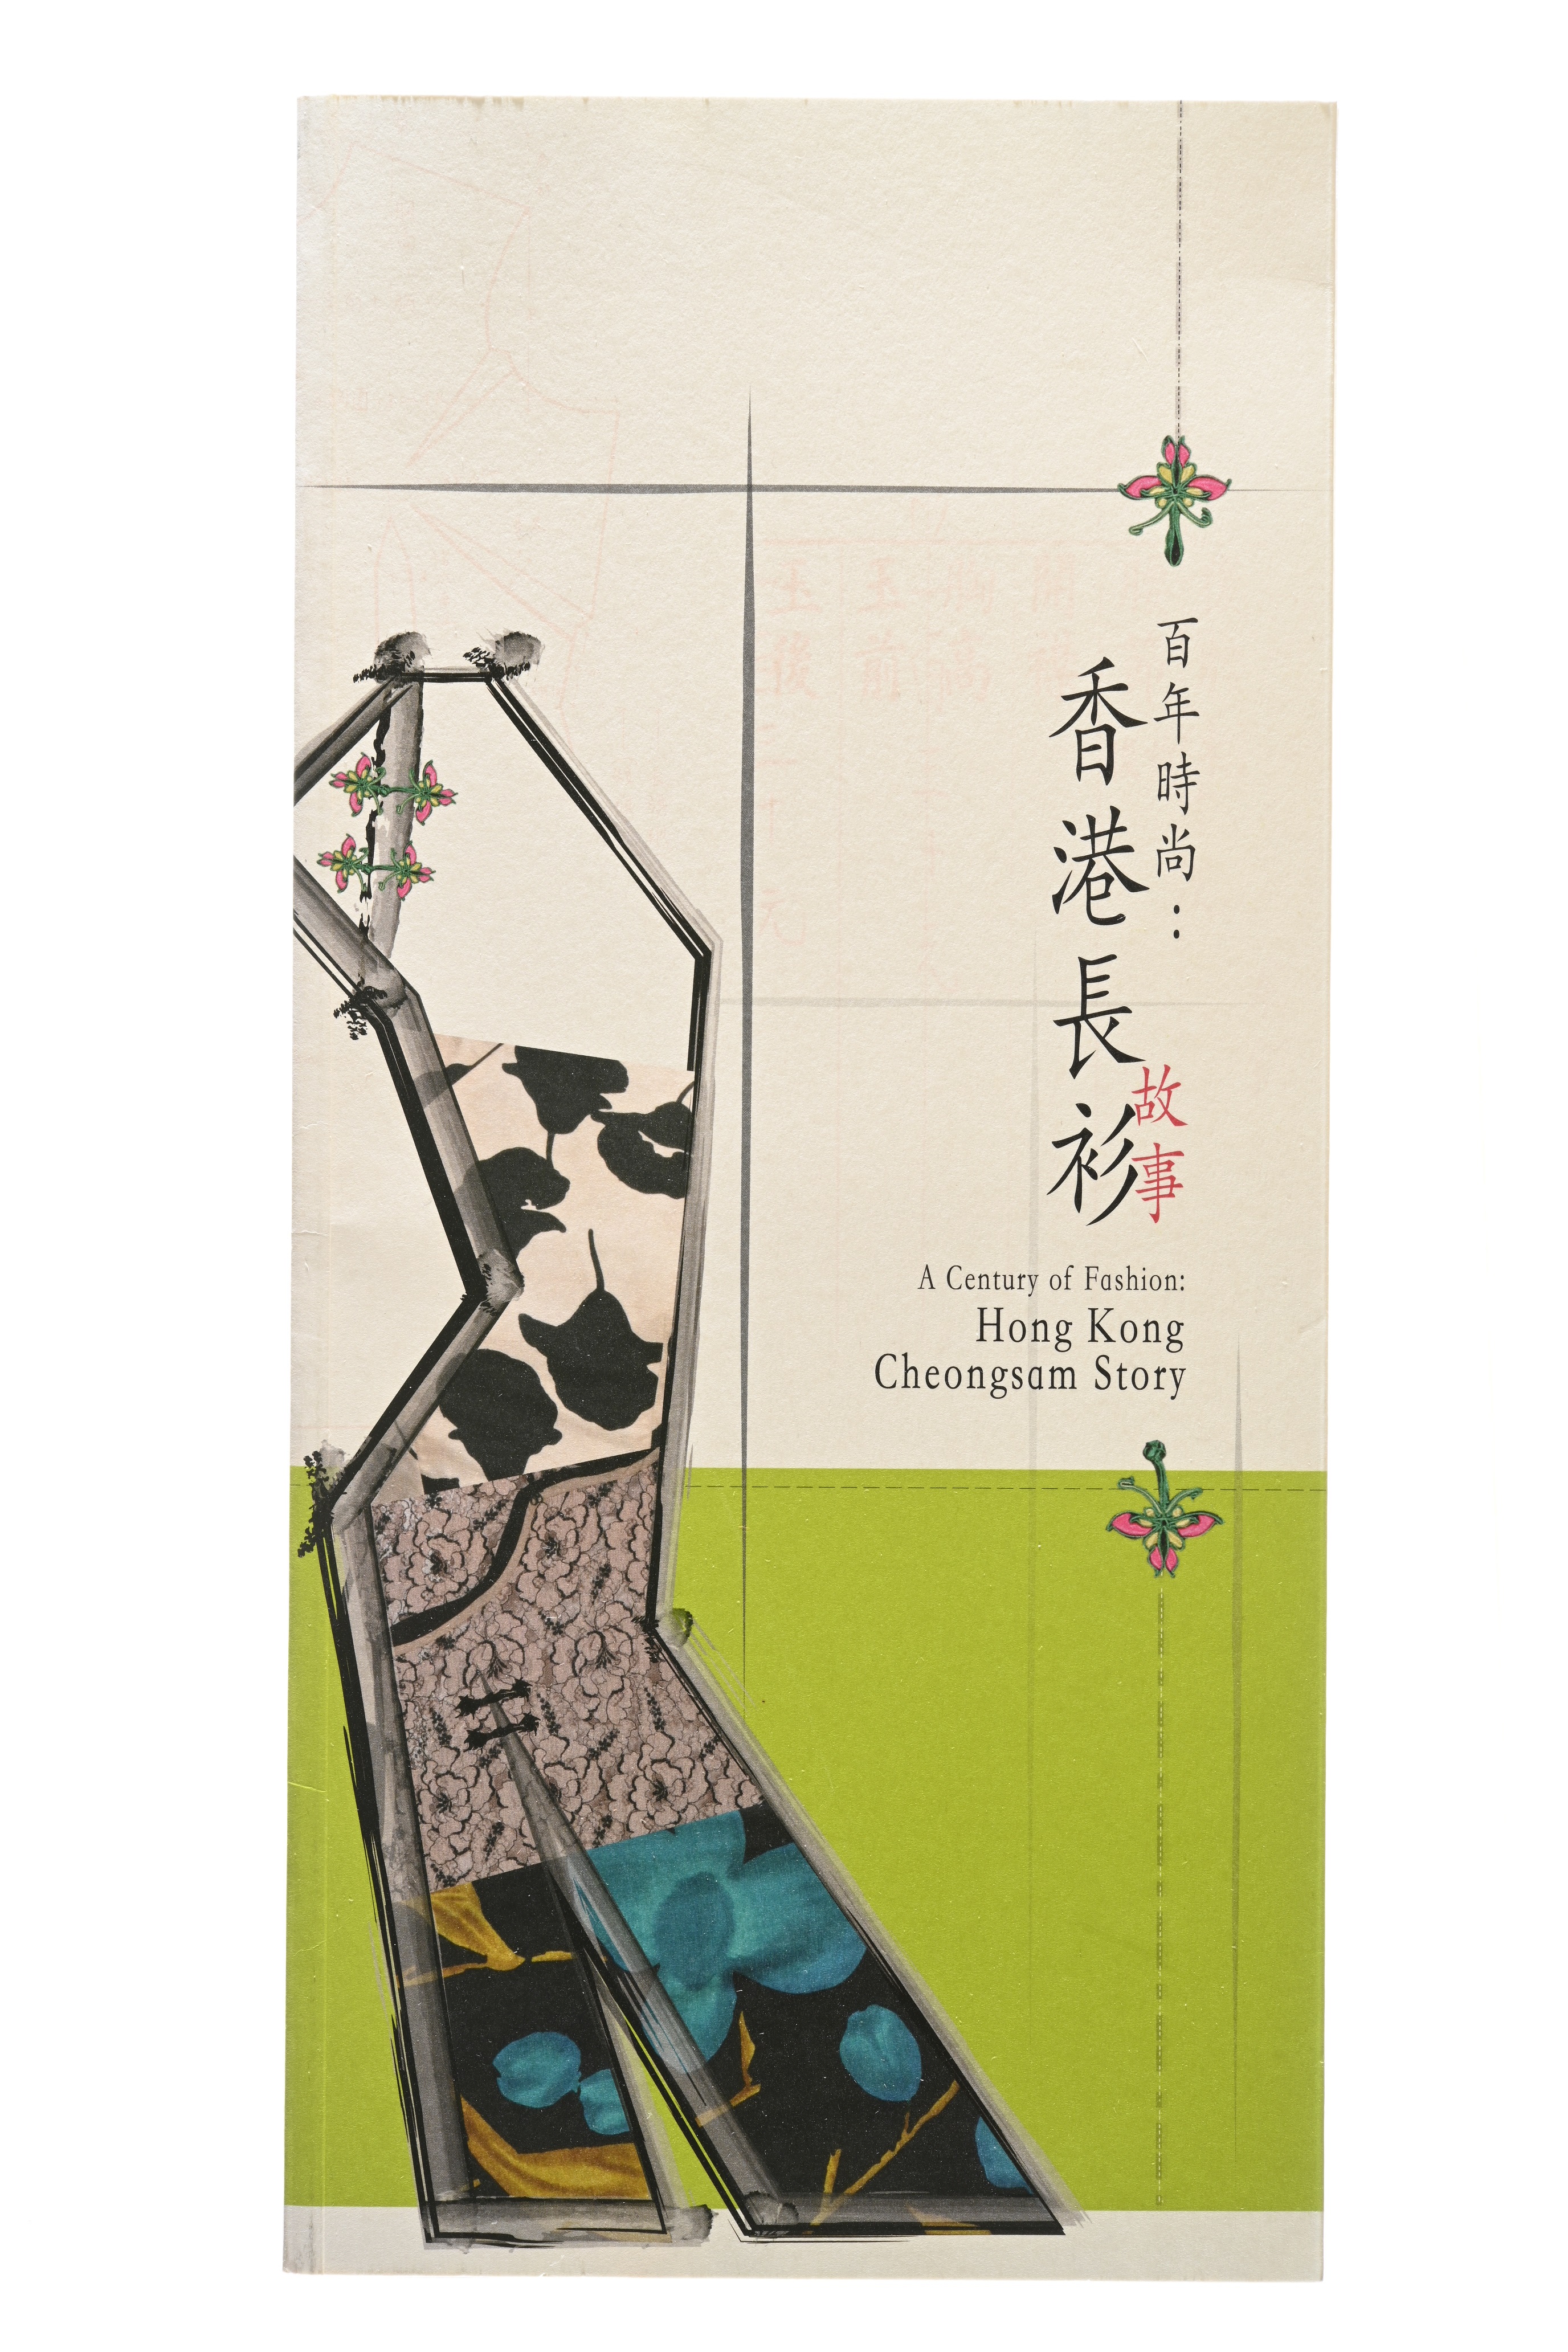 《百年时尚：香港长衫故事》展览图录